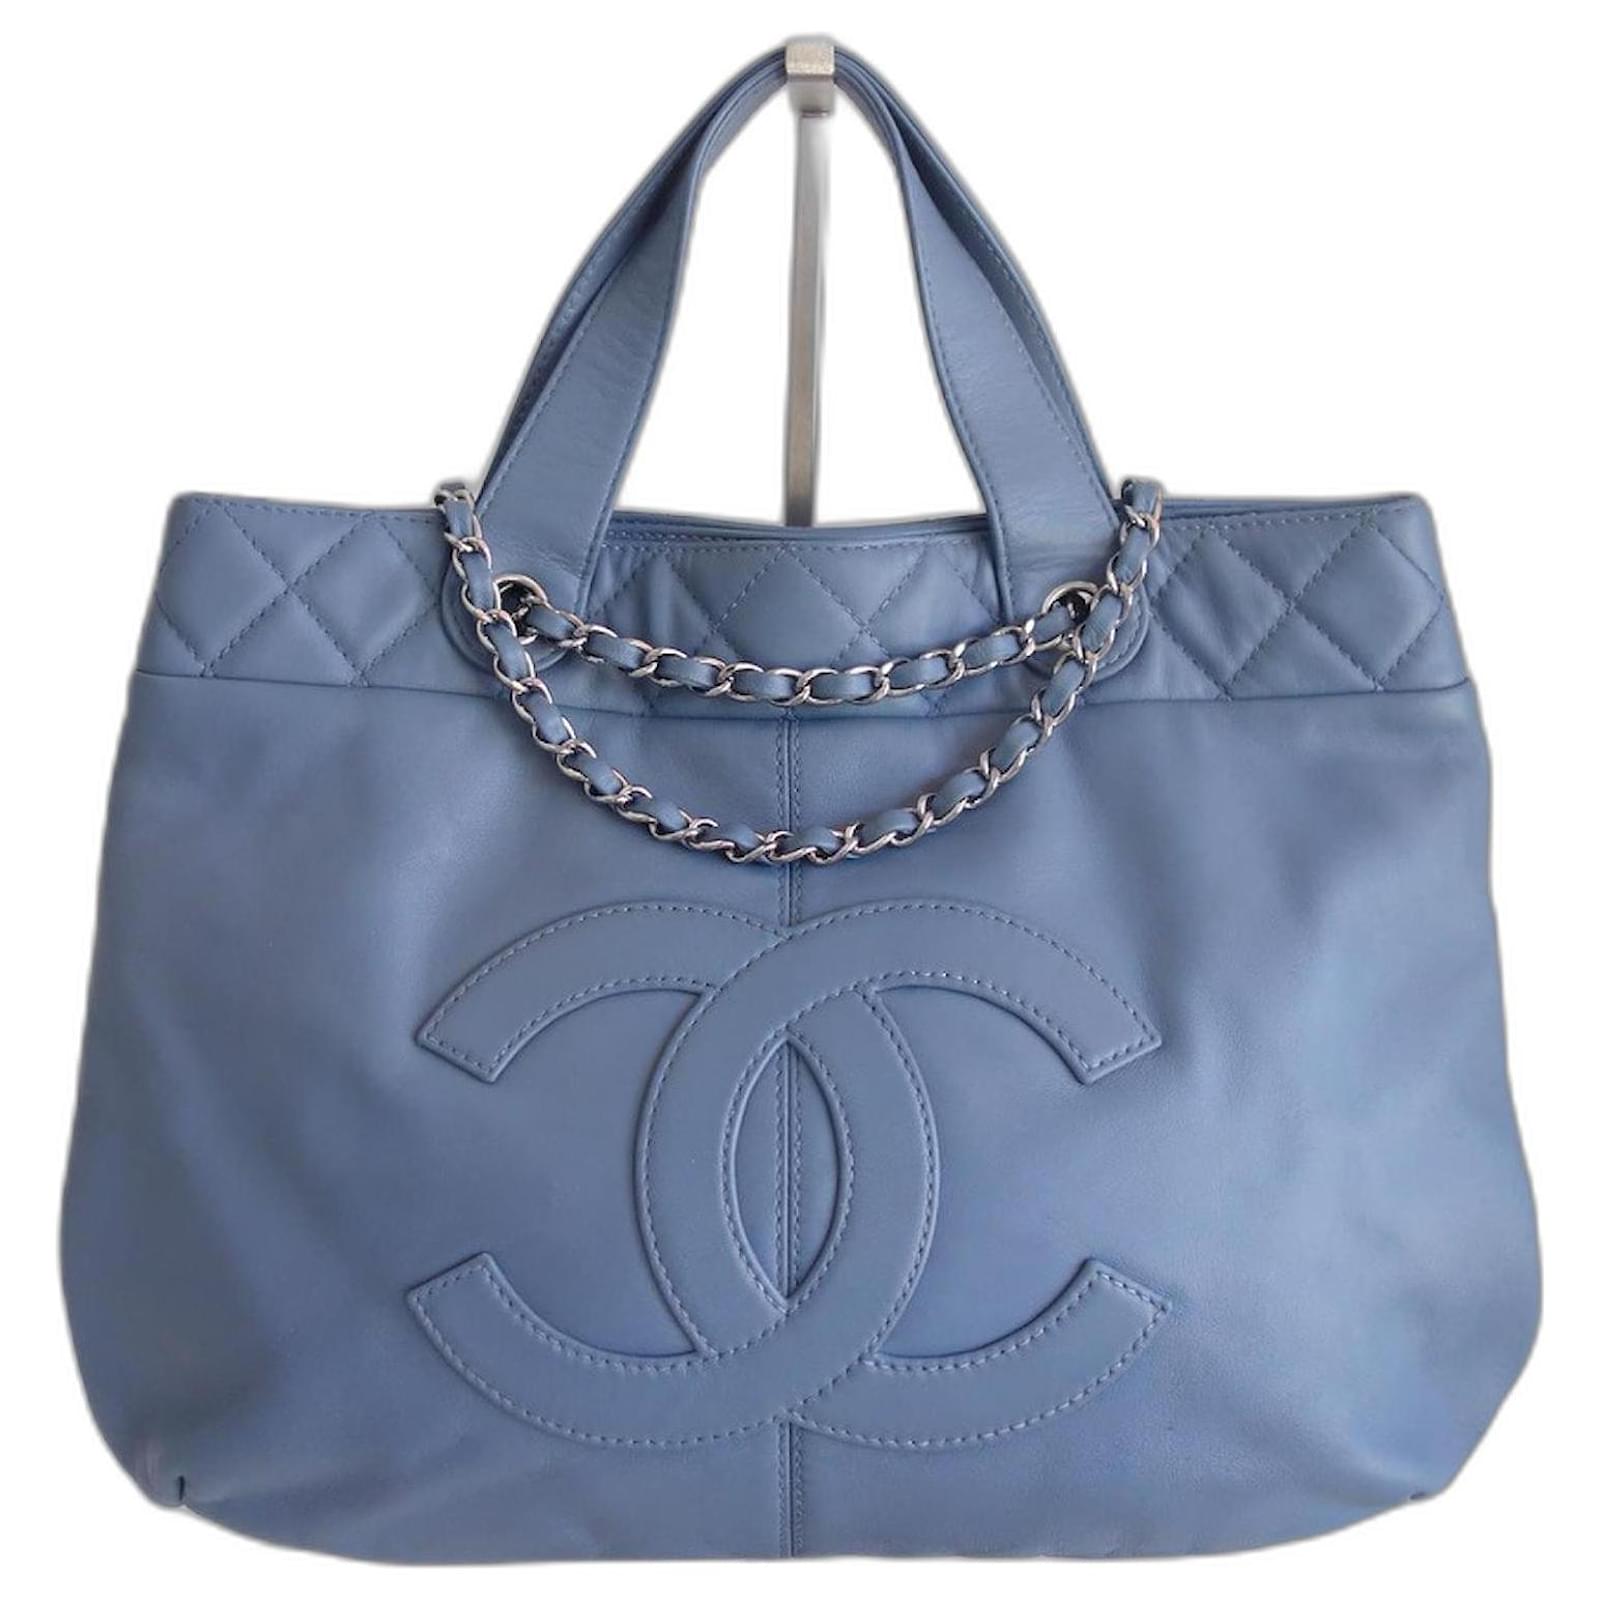 Handbags Chanel Chanel Denim Blue Shopping Bag